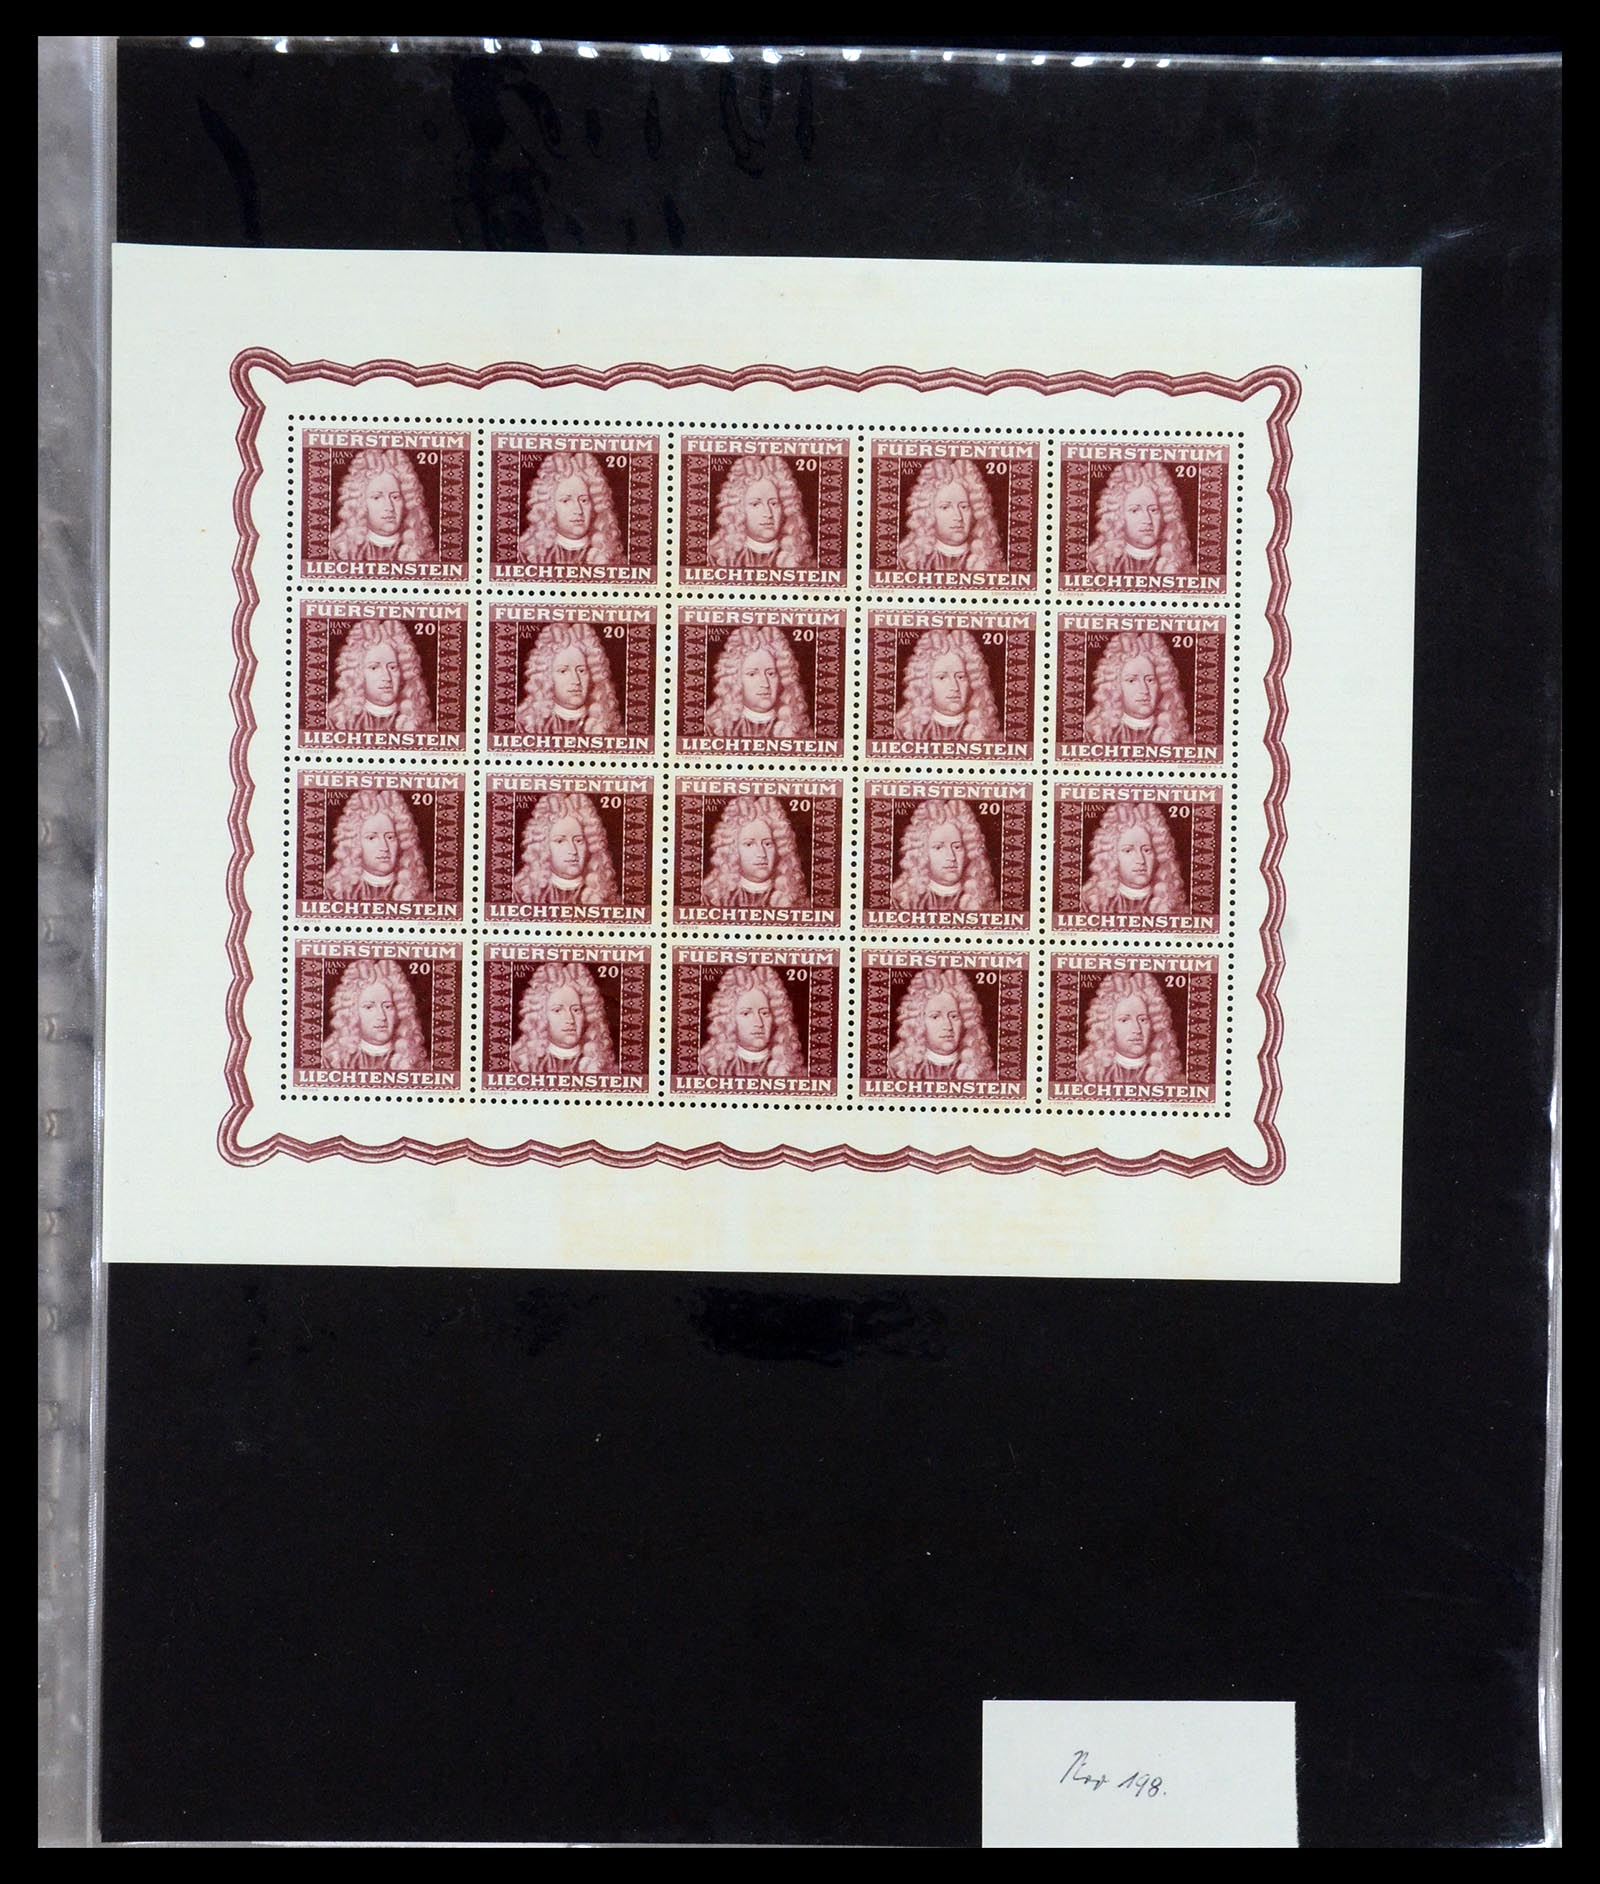 36280 015 - Stamp collection 36280 Liechtenstein souvenir sheets and sheetlets 1934-